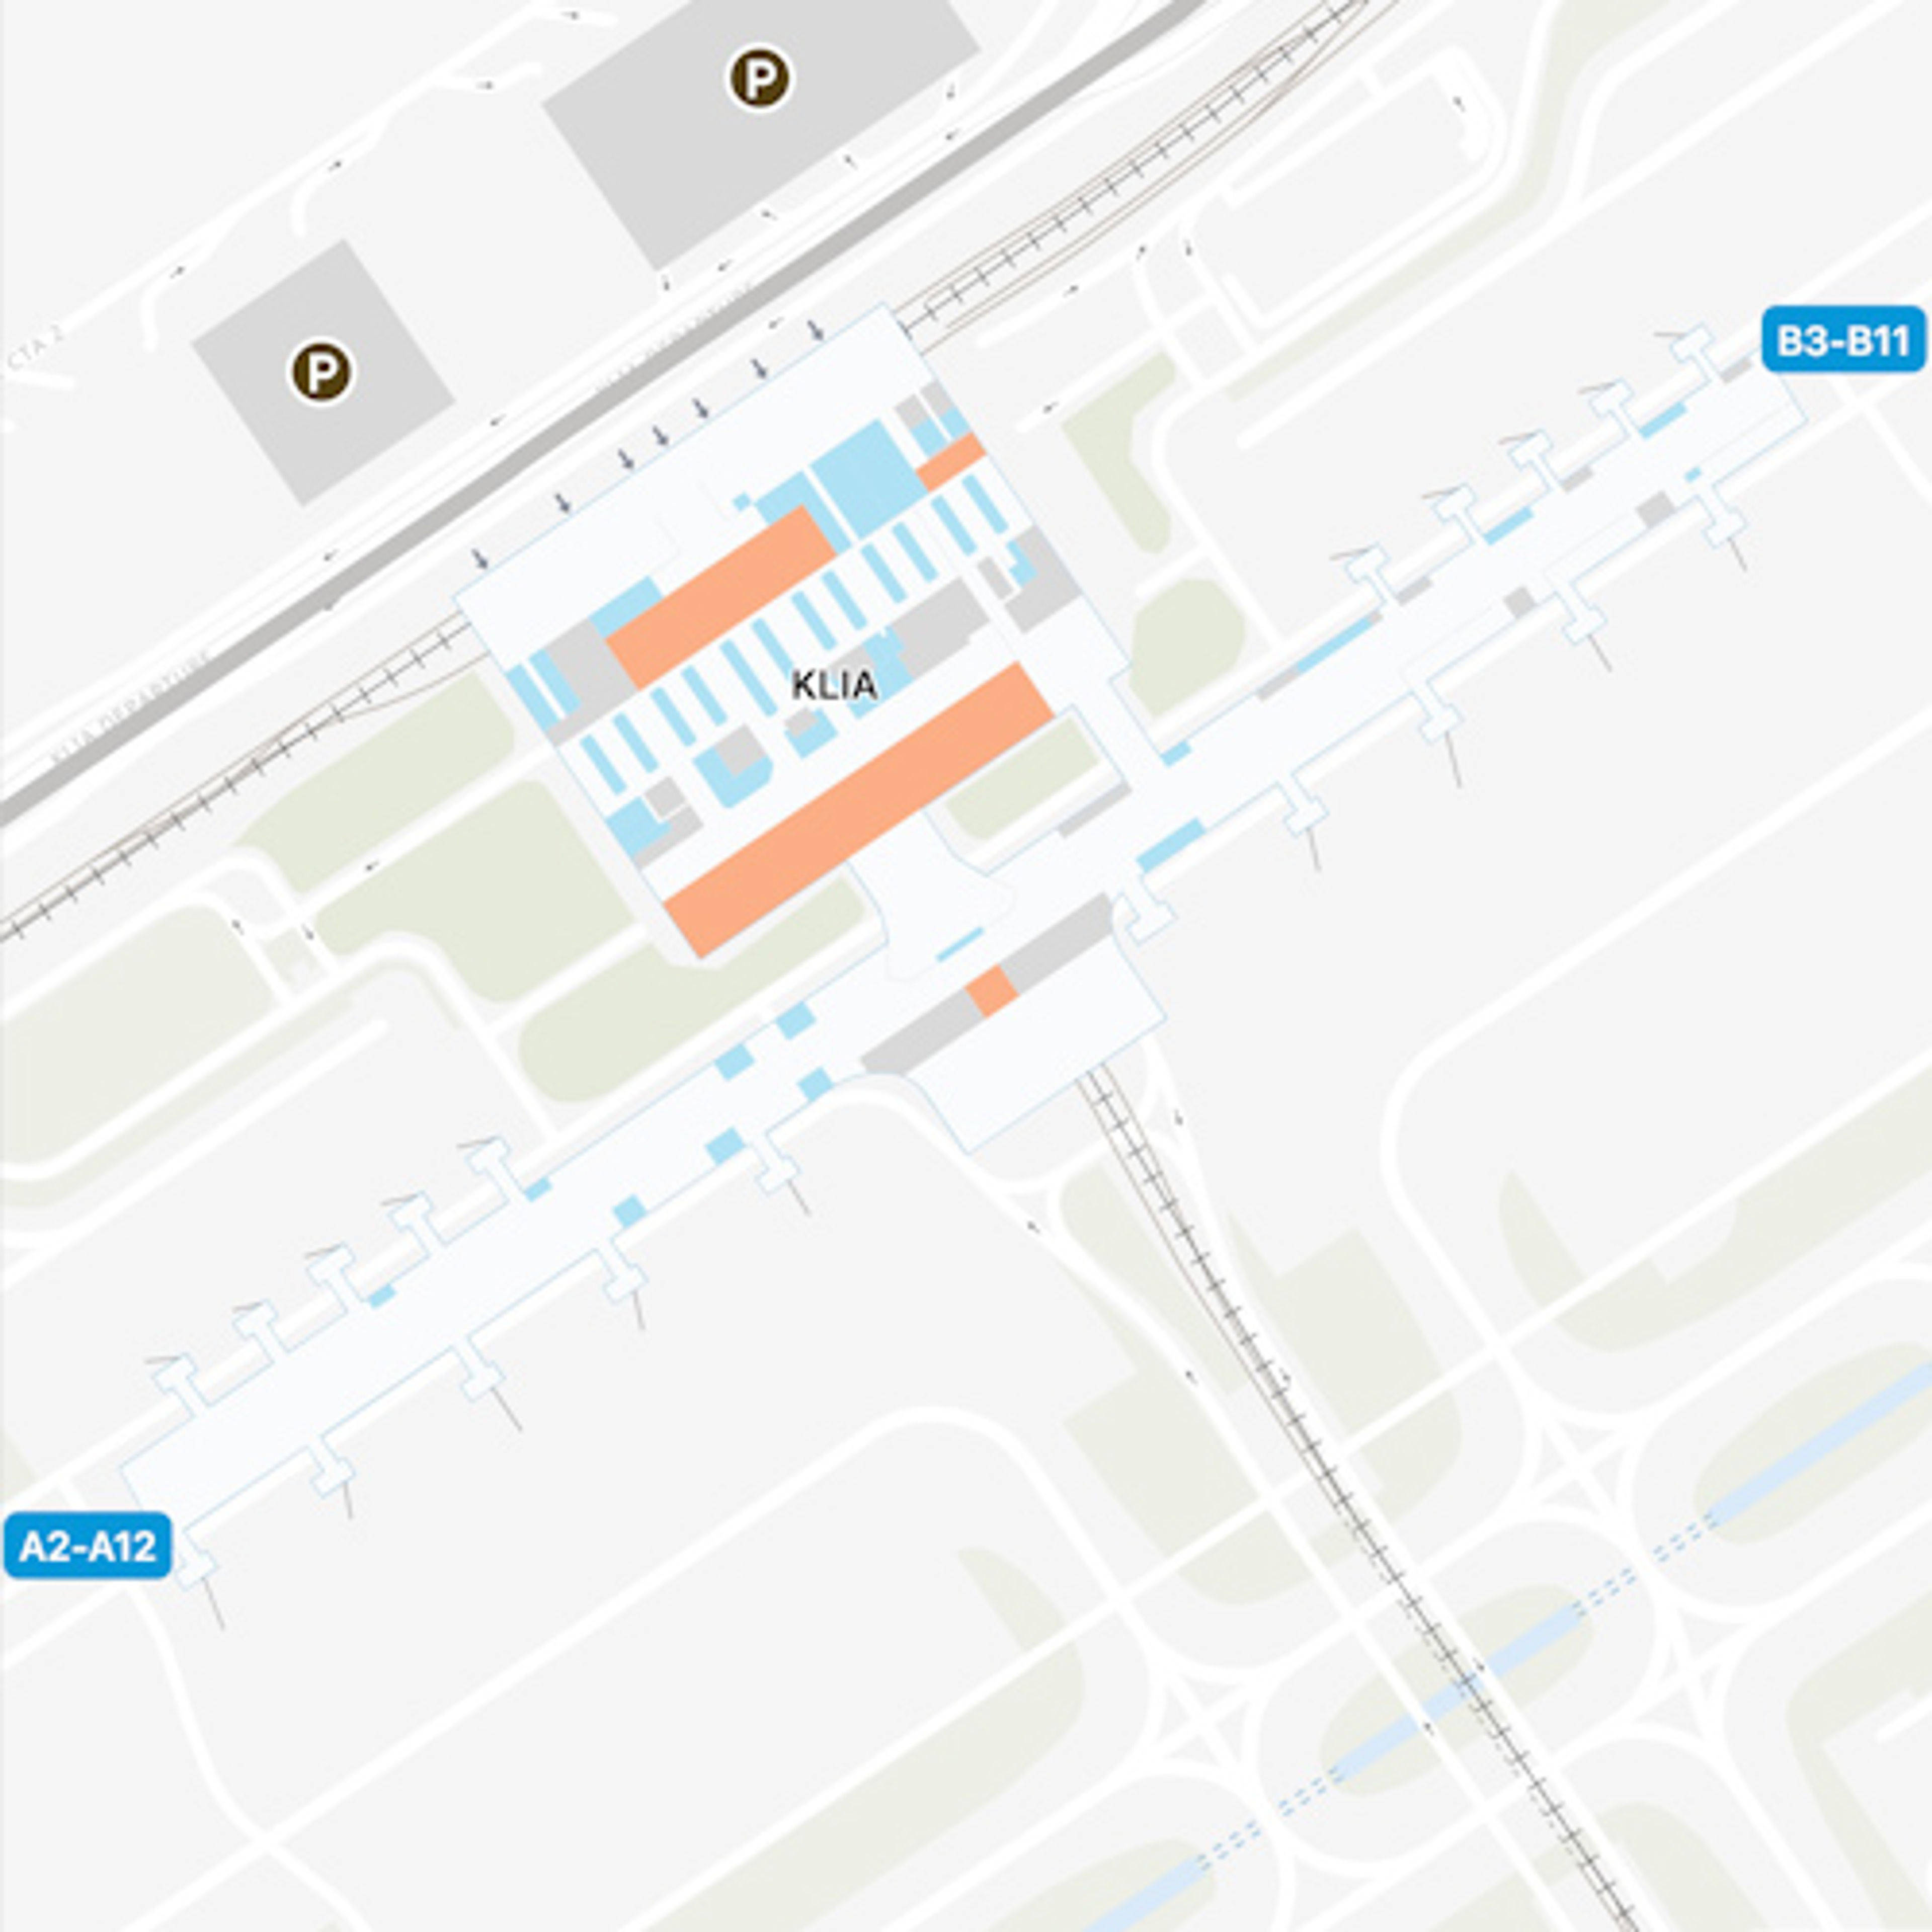 Selangor Airport Main Terminal Map